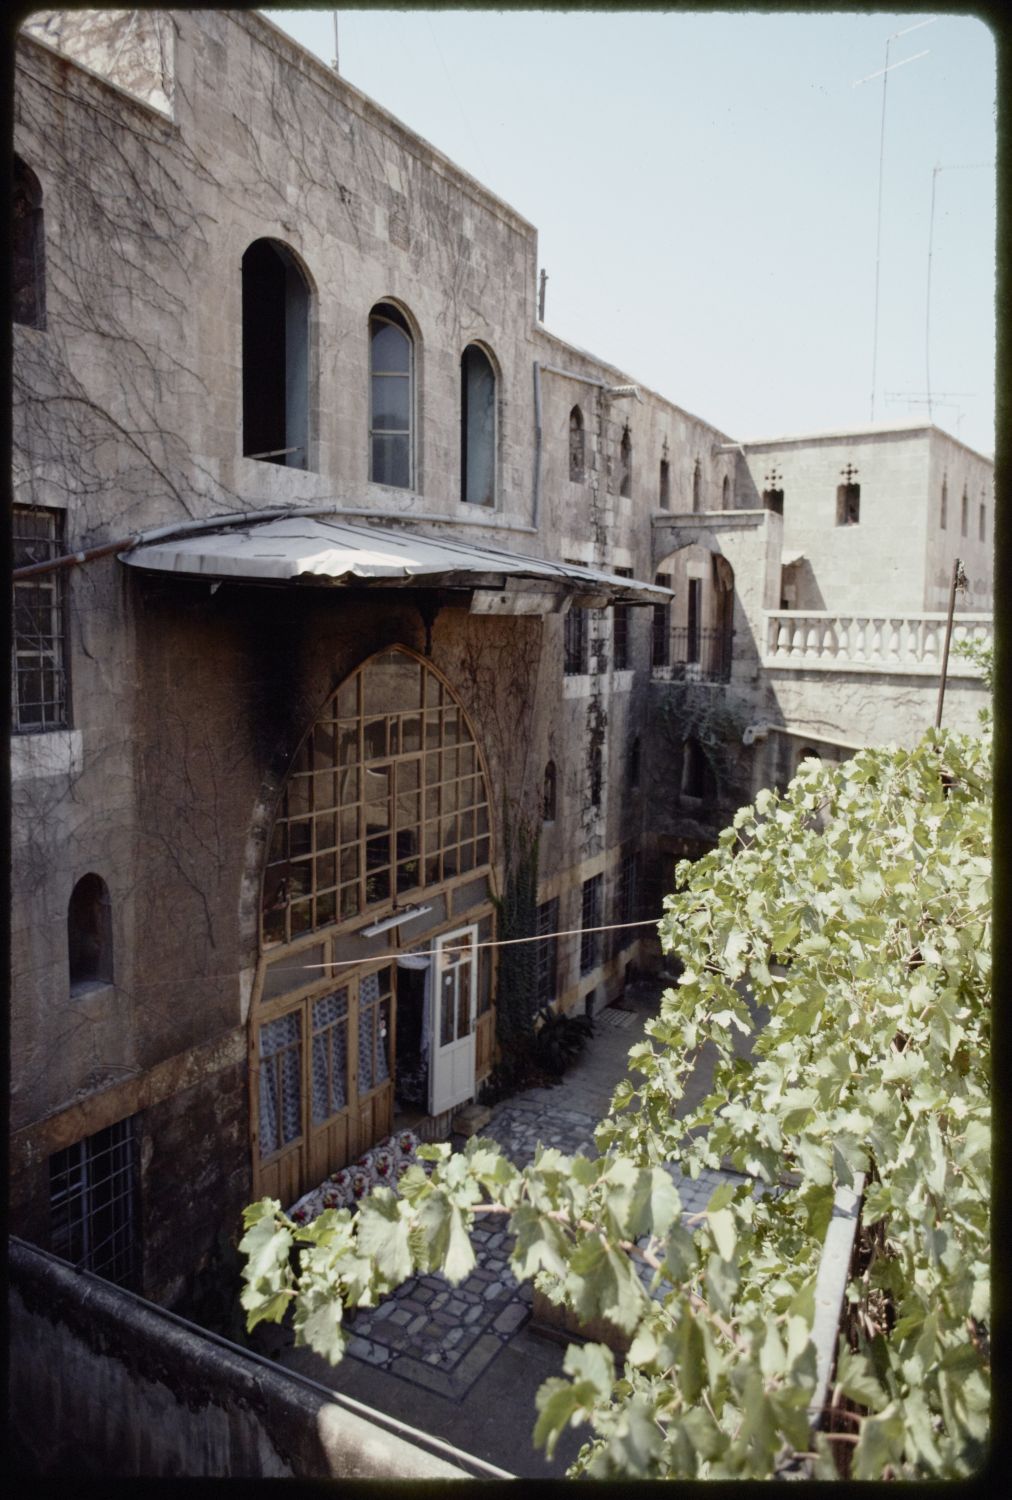 Bayt Kibba - Courtyard view of façade